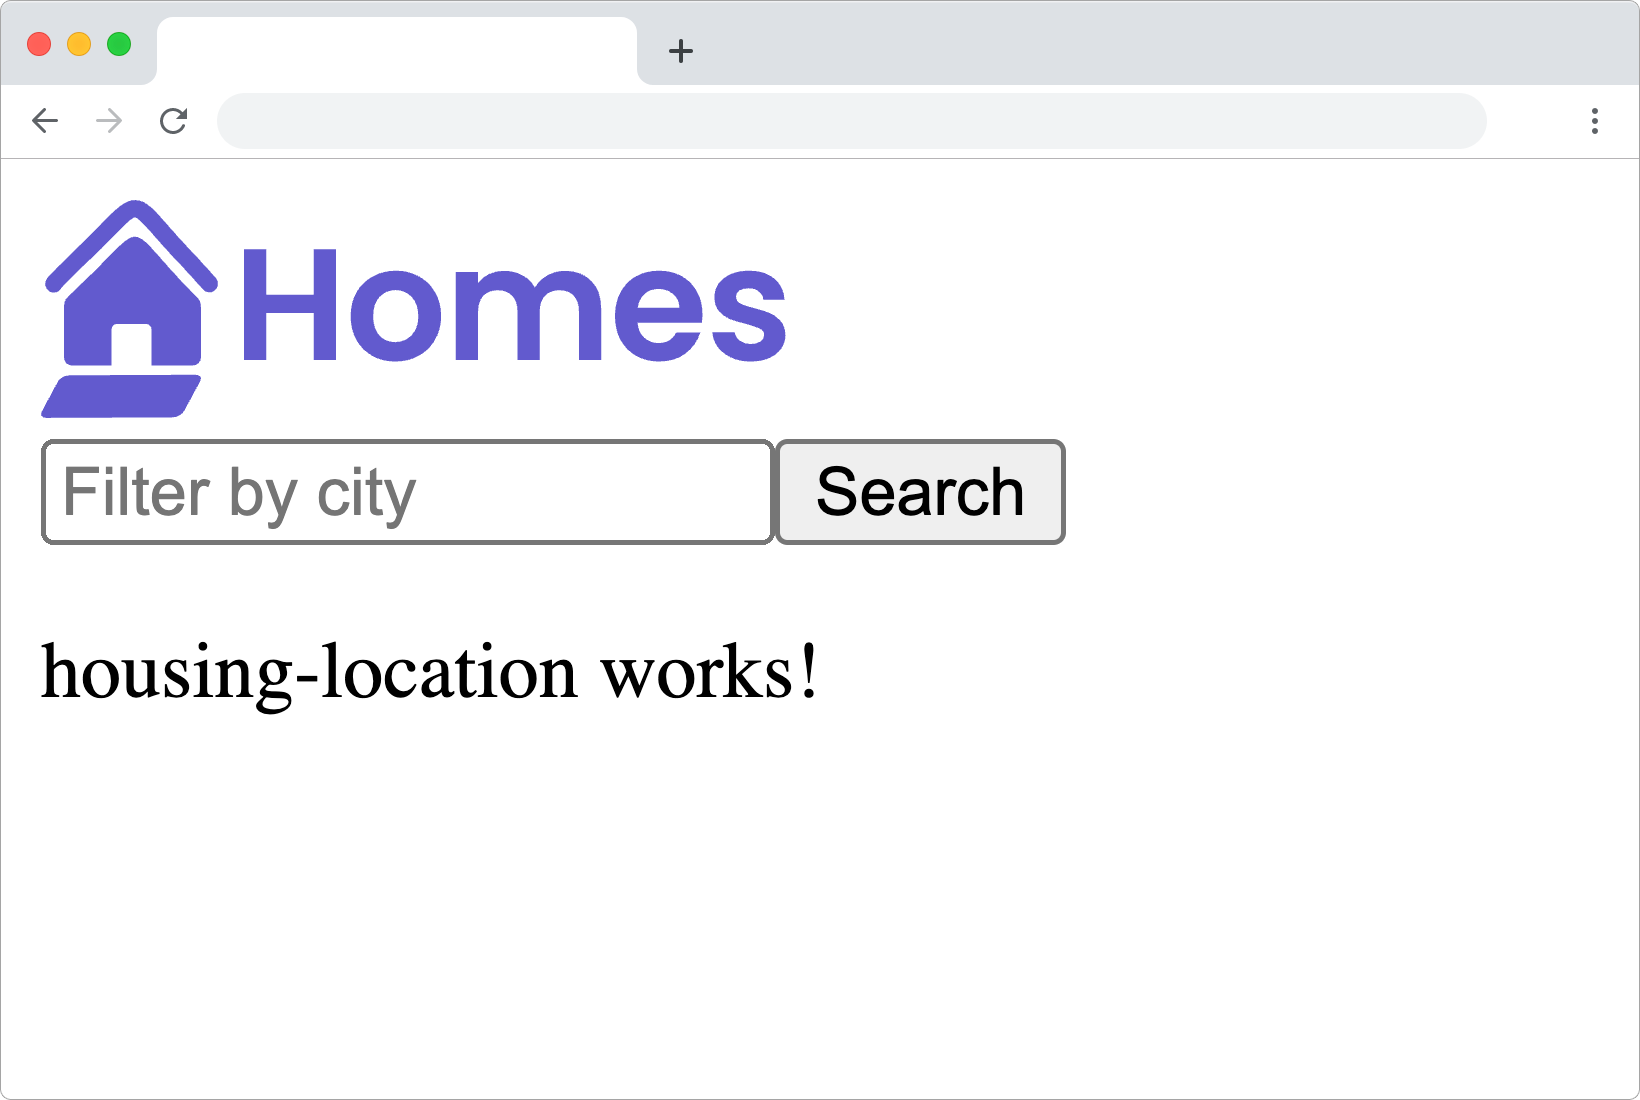 рамка браузера приложения homes-app, отображающая логотип, поле ввода текста фильтра, кнопку поиска и сообщение